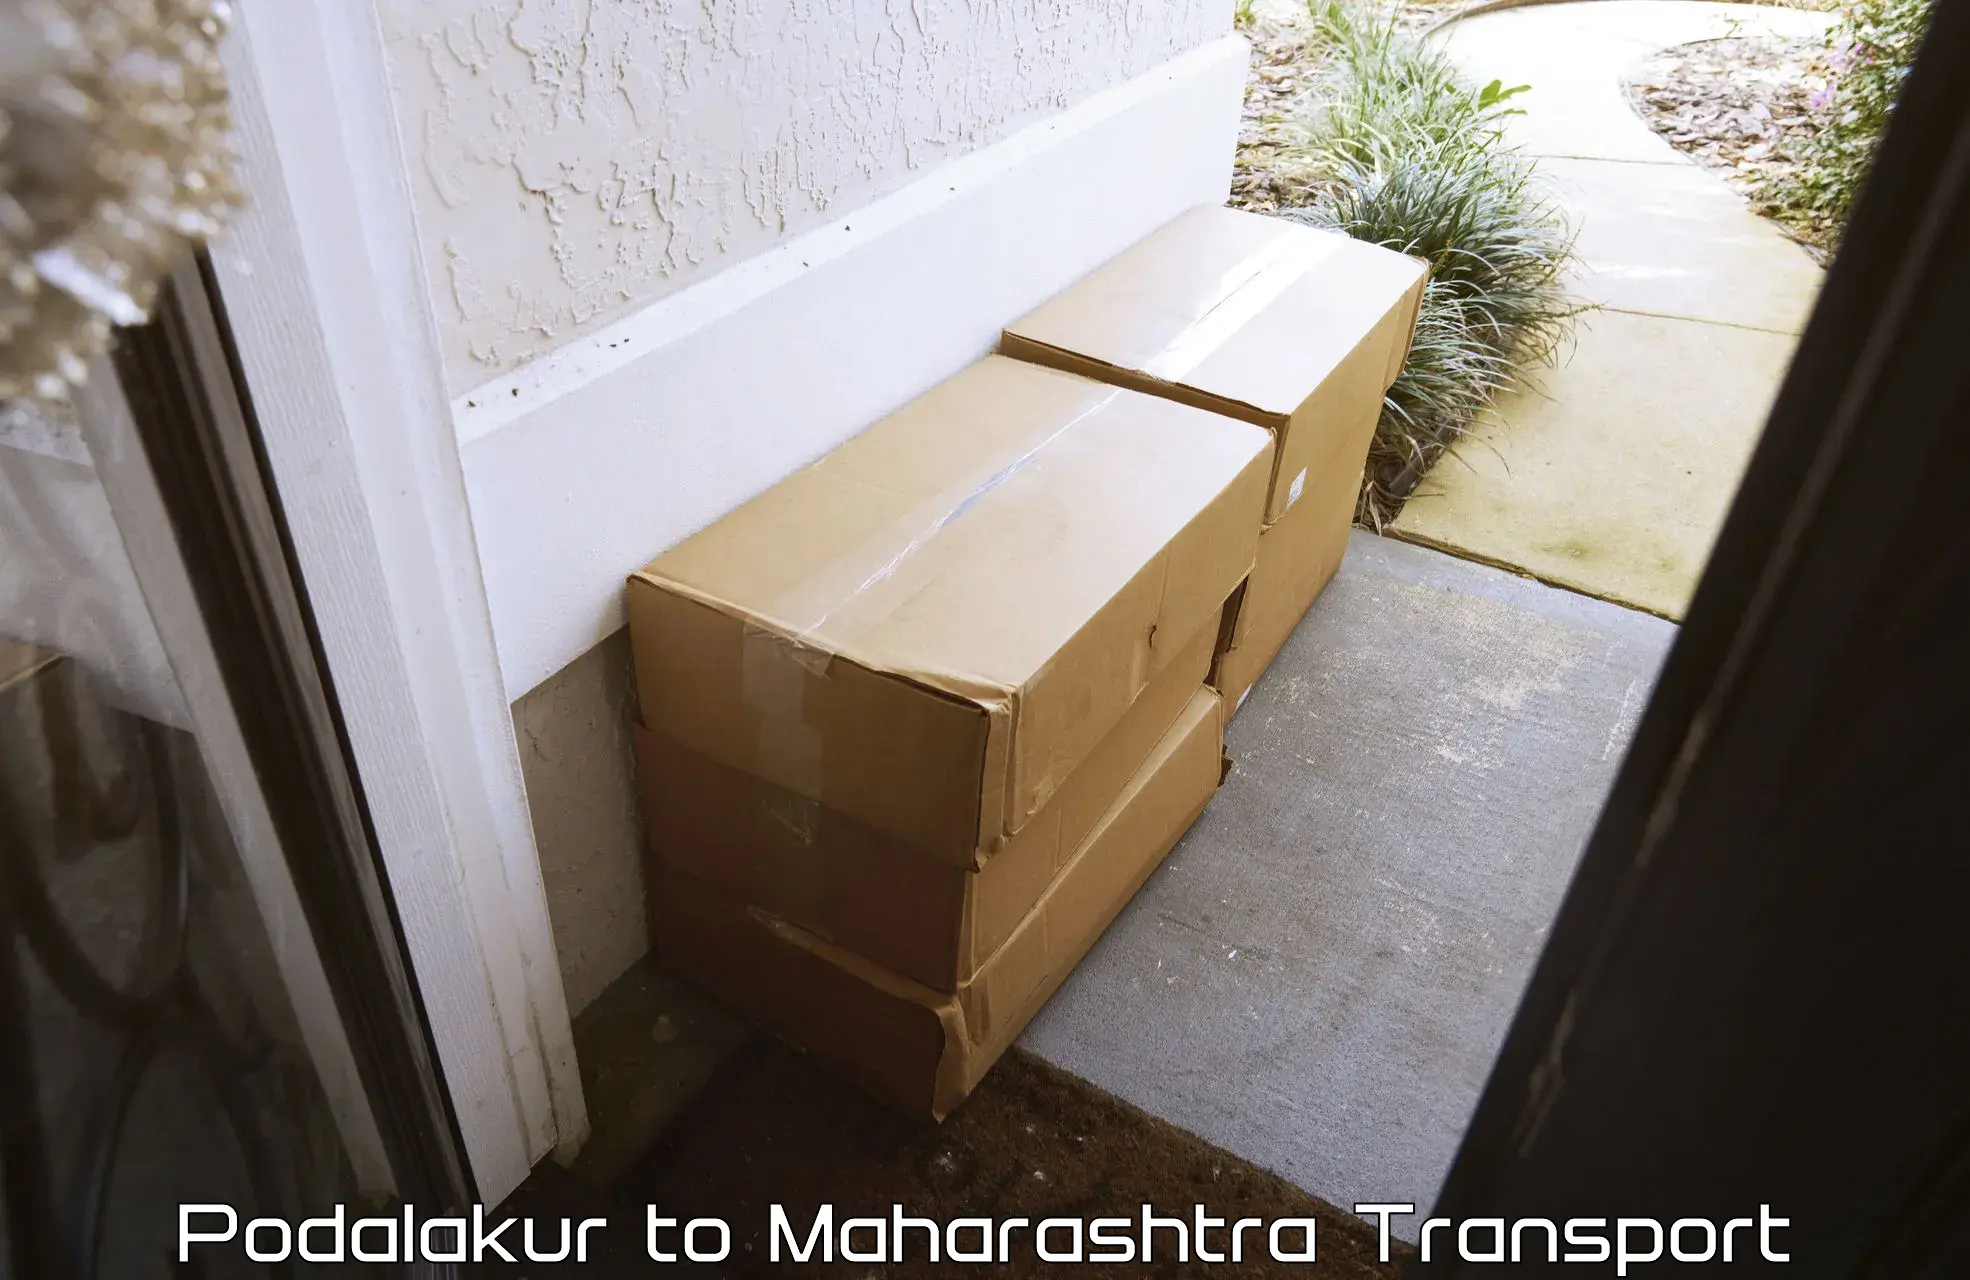 Transport shared services Podalakur to Raigarh Maharashtra